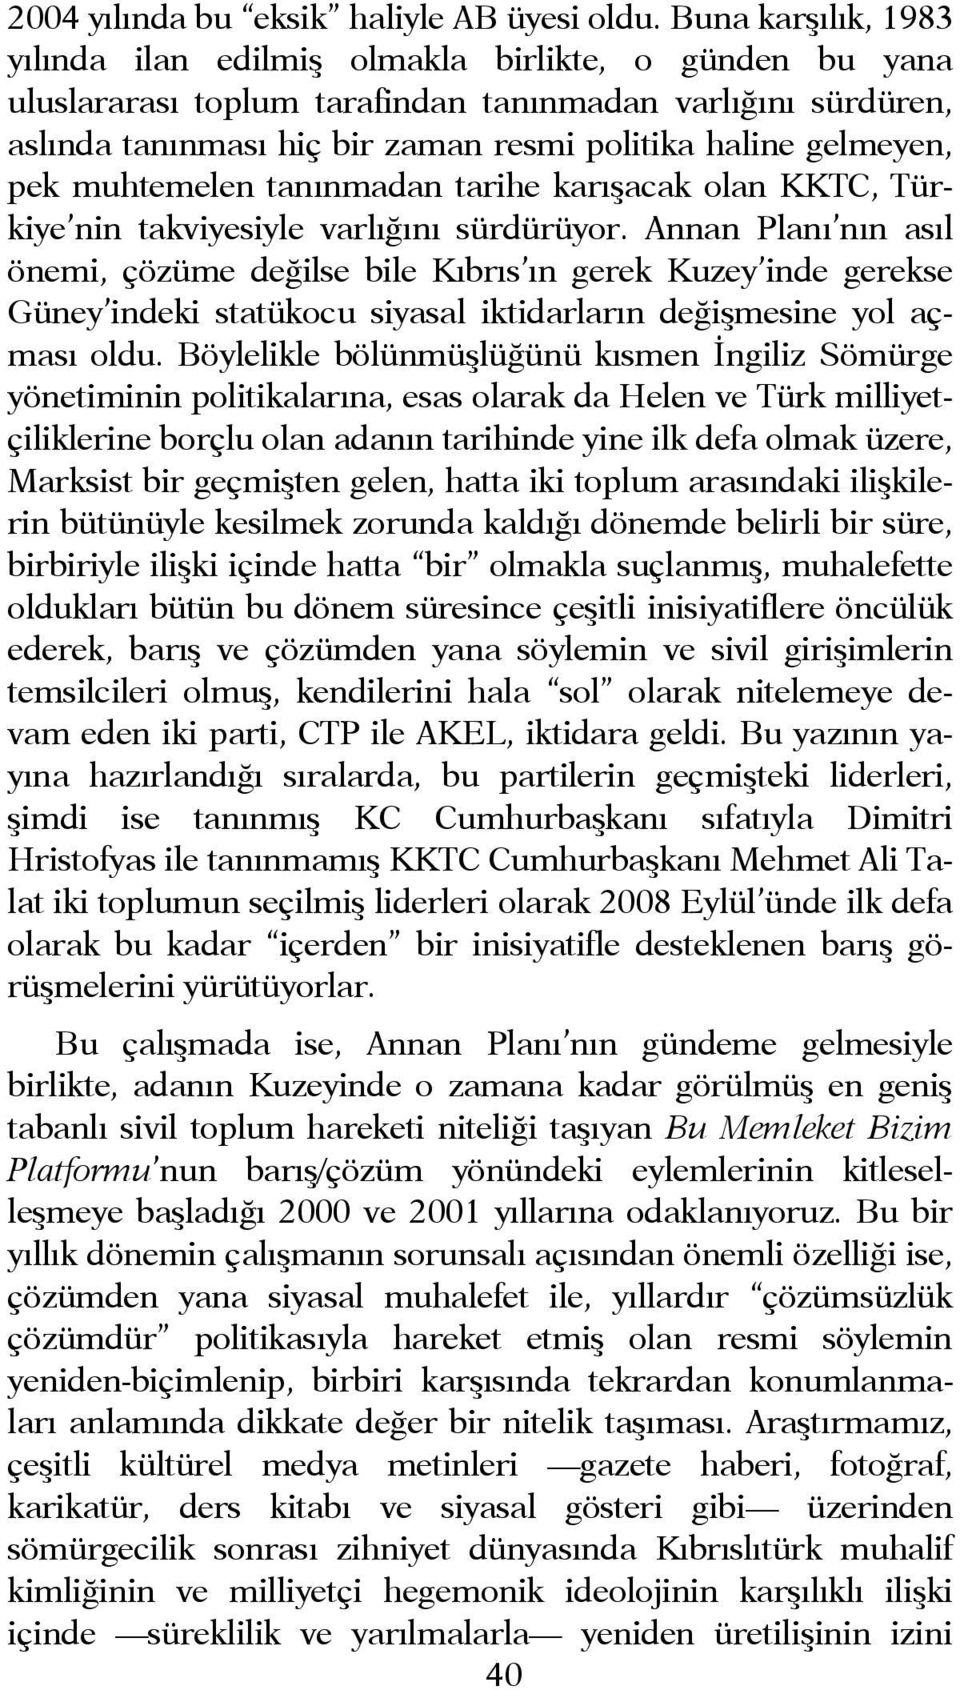 gelmeyen, pek muhtemelen tanınmadan tarihe karışacak olan KKTC, Türkiye nin takviyesiyle varlığını sürdürüyor.